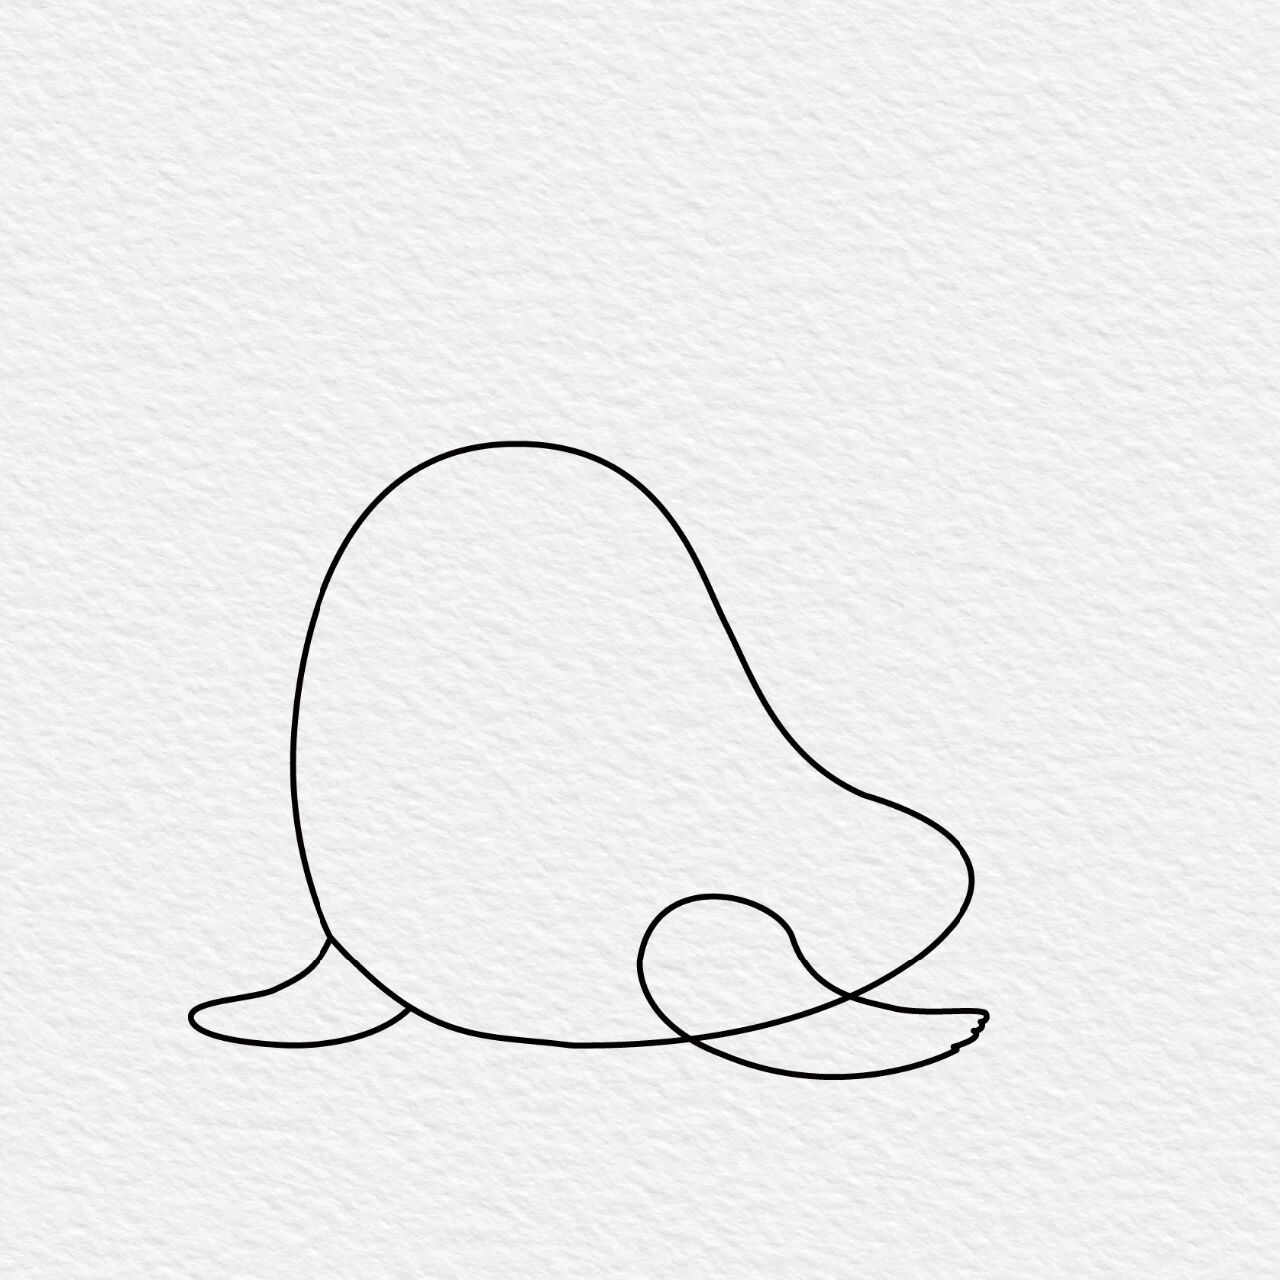 小海豹简笔画可爱图片